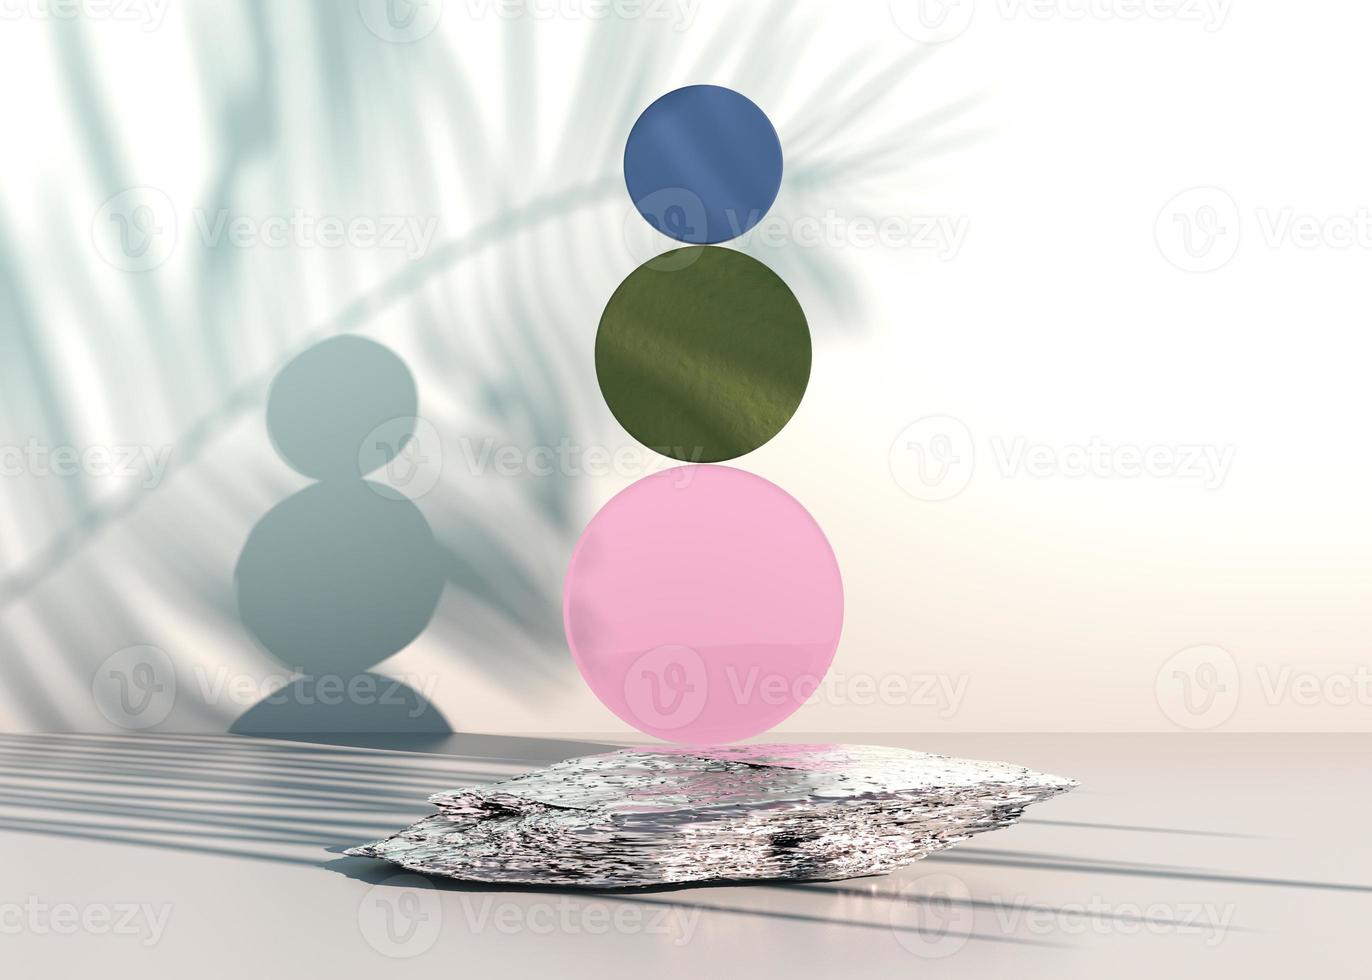 Steinpodest auf pastellfarbenem Hintergrund, für Produktpräsentation, leer für Mockup-Design. 3D-Rendering. foto